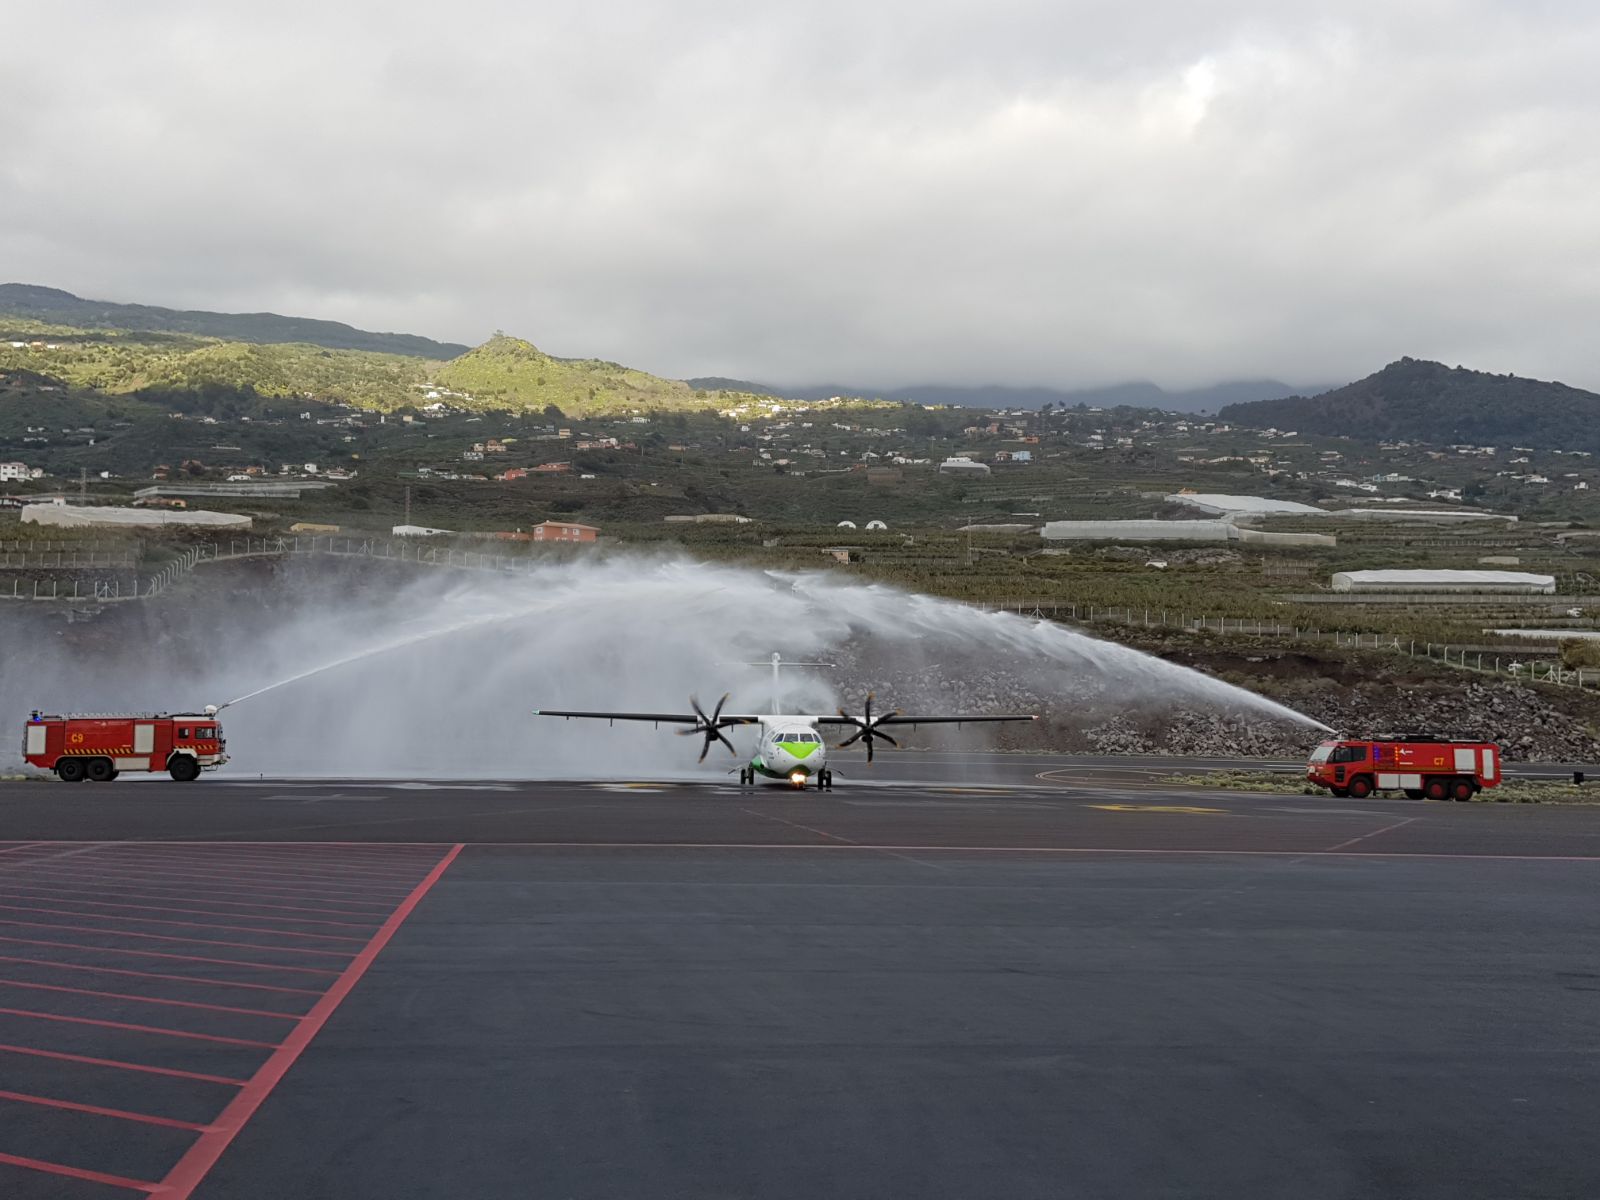 Arco de agua para dar la bienvenida al avión de Binter que lleva el nombre de La Palma Isla Bonita.